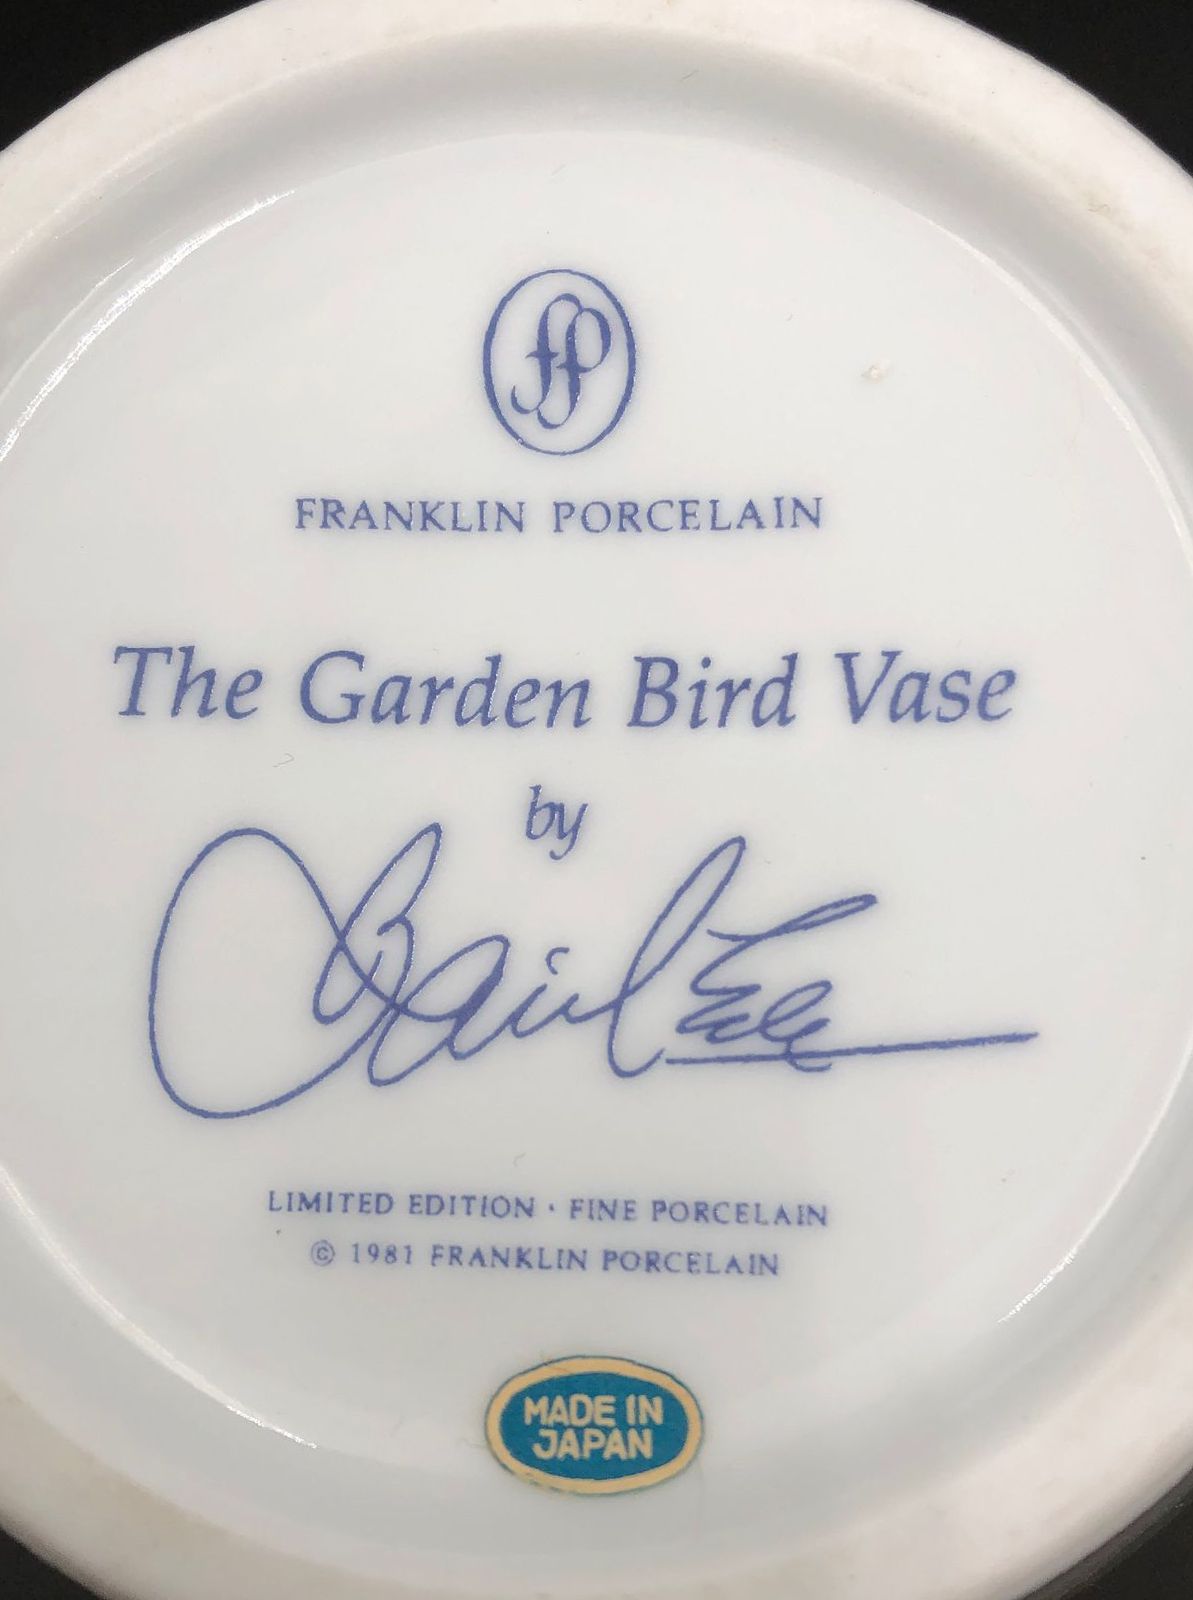 "The Garden Bird Vase" By Basil Ede - Franklin Porcelain 1981 Limited Edition